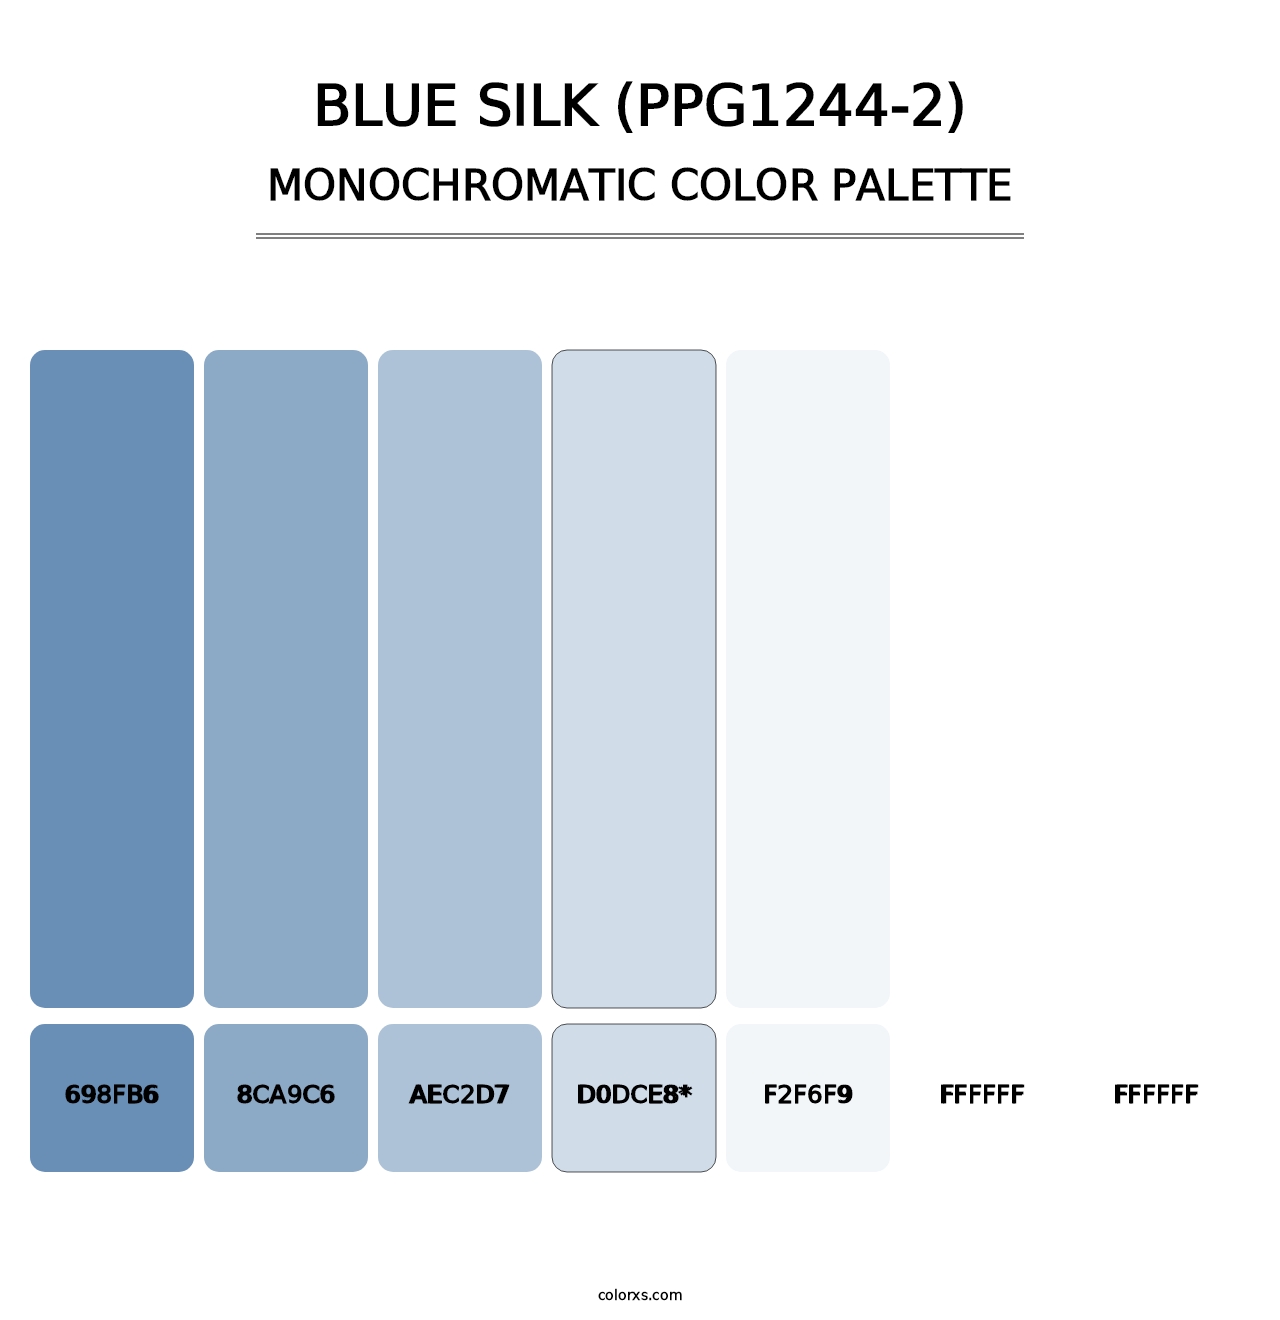 Blue Silk (PPG1244-2) - Monochromatic Color Palette